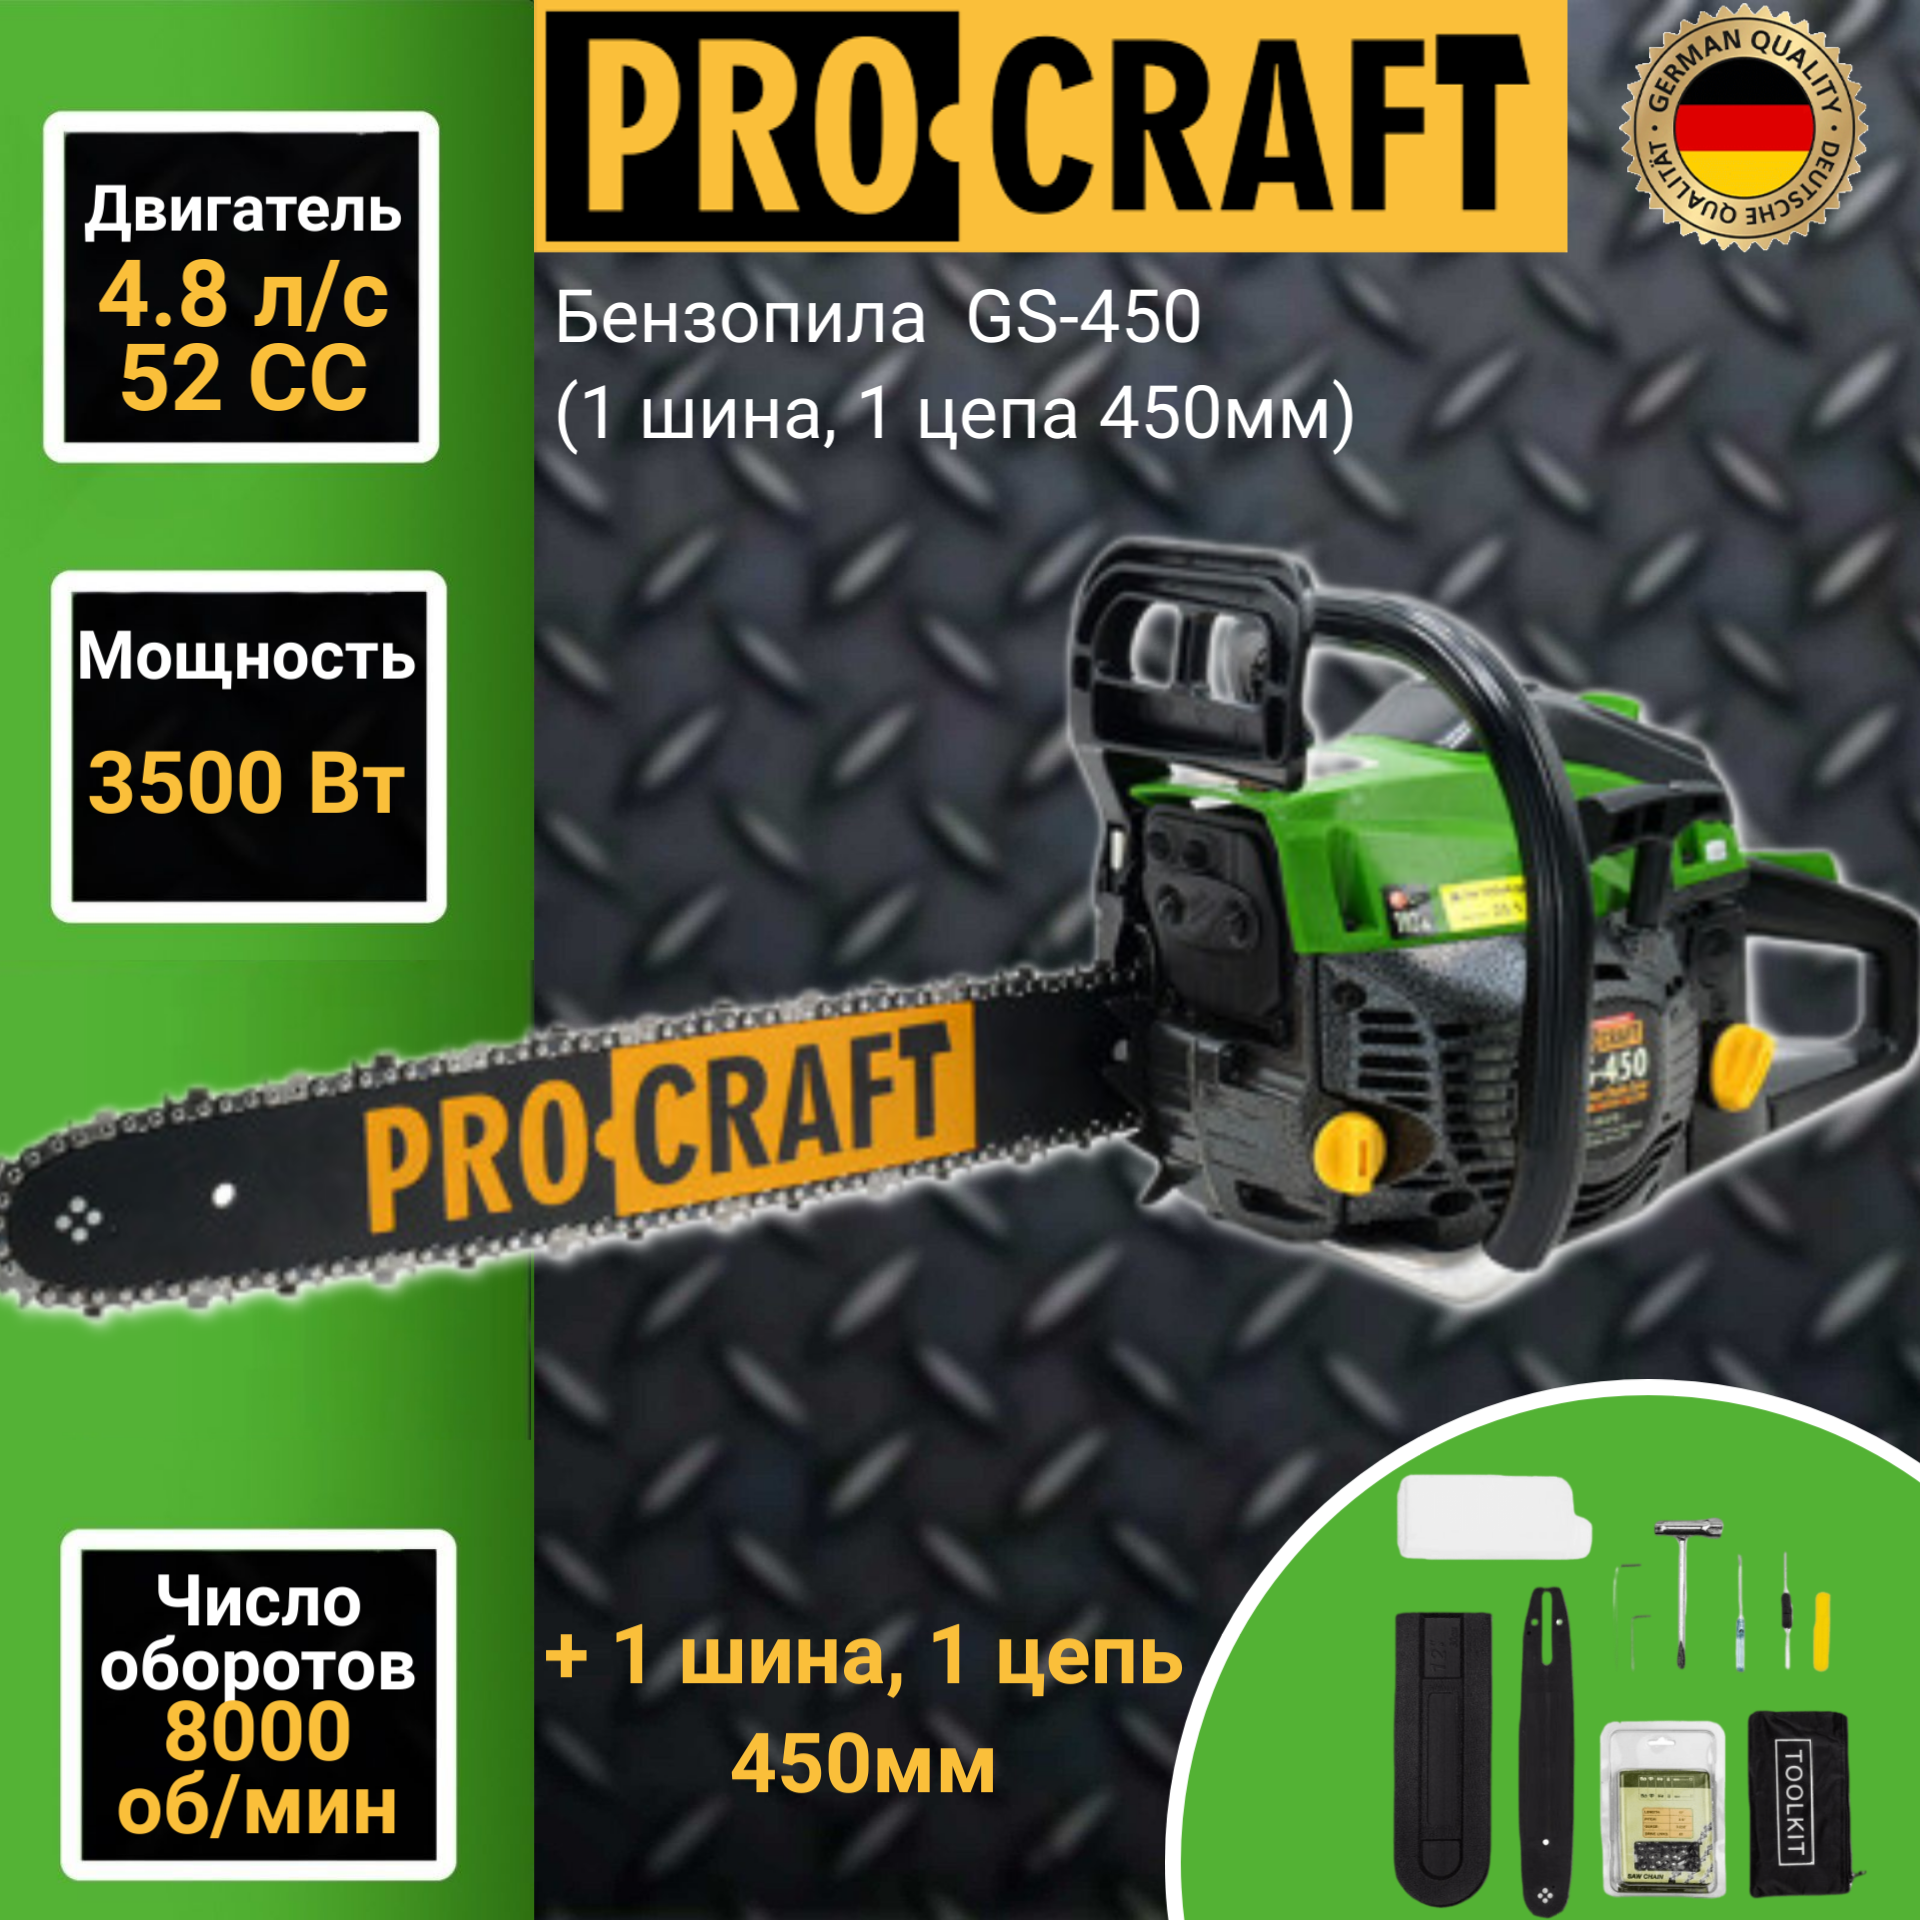 Бензопила ProCraft GS-450 398 4,8 л.с.